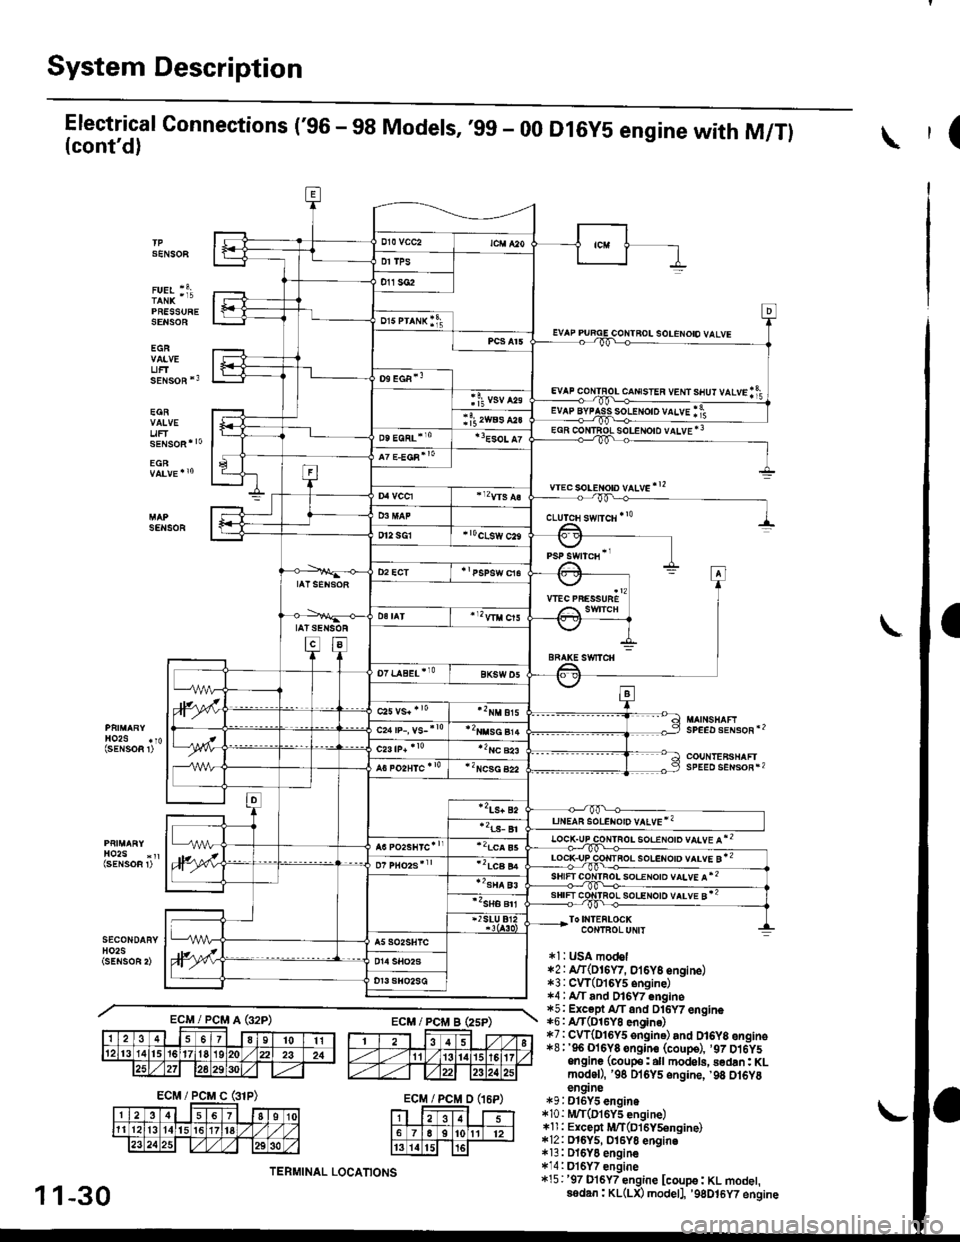 HONDA CIVIC 1997 6.G User Guide System Description
Electrical Connections (96 - 98 Models, ,99 - 00(contd)
PRESSURESENSOE
EGR
UFTsENsoR *3
EGR
uF
D16Y5 engine with M/Tl(
SENSOF
solENoto vALvE *3
wec soLeton vltve!2
SENSOR
SPEED s